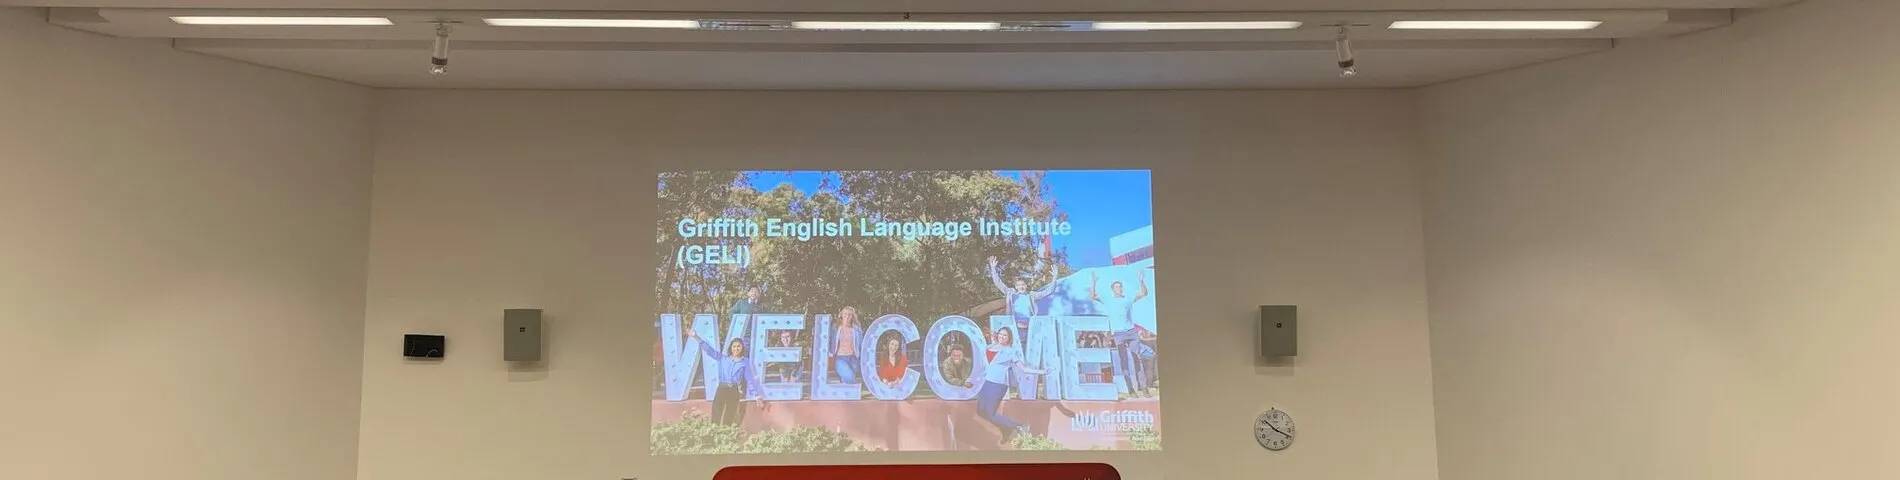 Griffith English Language Institute obrazek 1